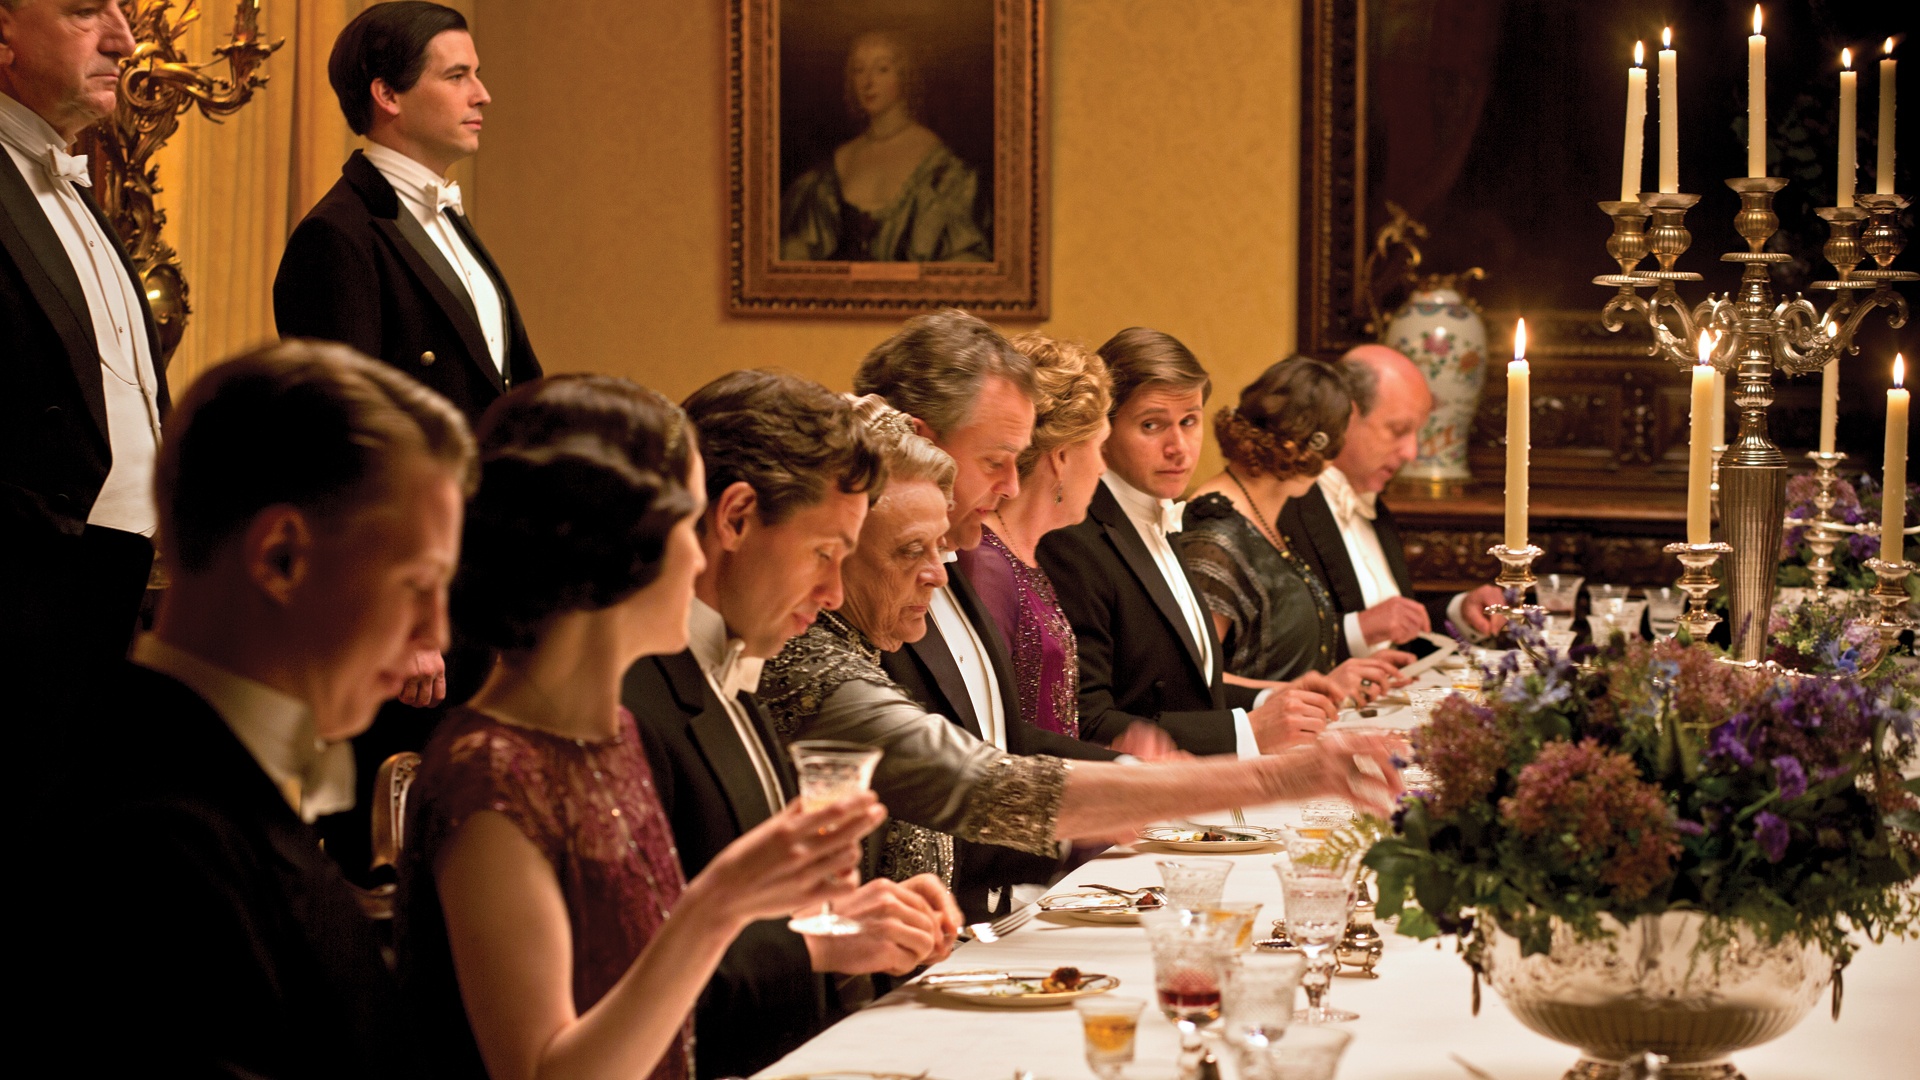 Em uma sala de jantar elegante de um lindo castelo na Inglaterra do início do século XX, os personagens da série inglesa Downton Abbey estão a mesa prontos para jantar. A mesa é oval com uma toalha creme e sobre ela taças de cristal e louça a frente de cada personagem. No centro , candelabros de cinco braços dão um toque final de requinte. O dono da Casa Lorde Crawley está ao centro da mesa e atrás dele o mordomo impecável aguarda ordens em pé, a direita e esquerda de Lorde Crawley, estão sua filha Mary e a sobrinha Rose elegantemente trajadas e a sua frente estão sua mulher, sua terceira filha e o genro, todos concentrados em uma conversa aparentemente séria.